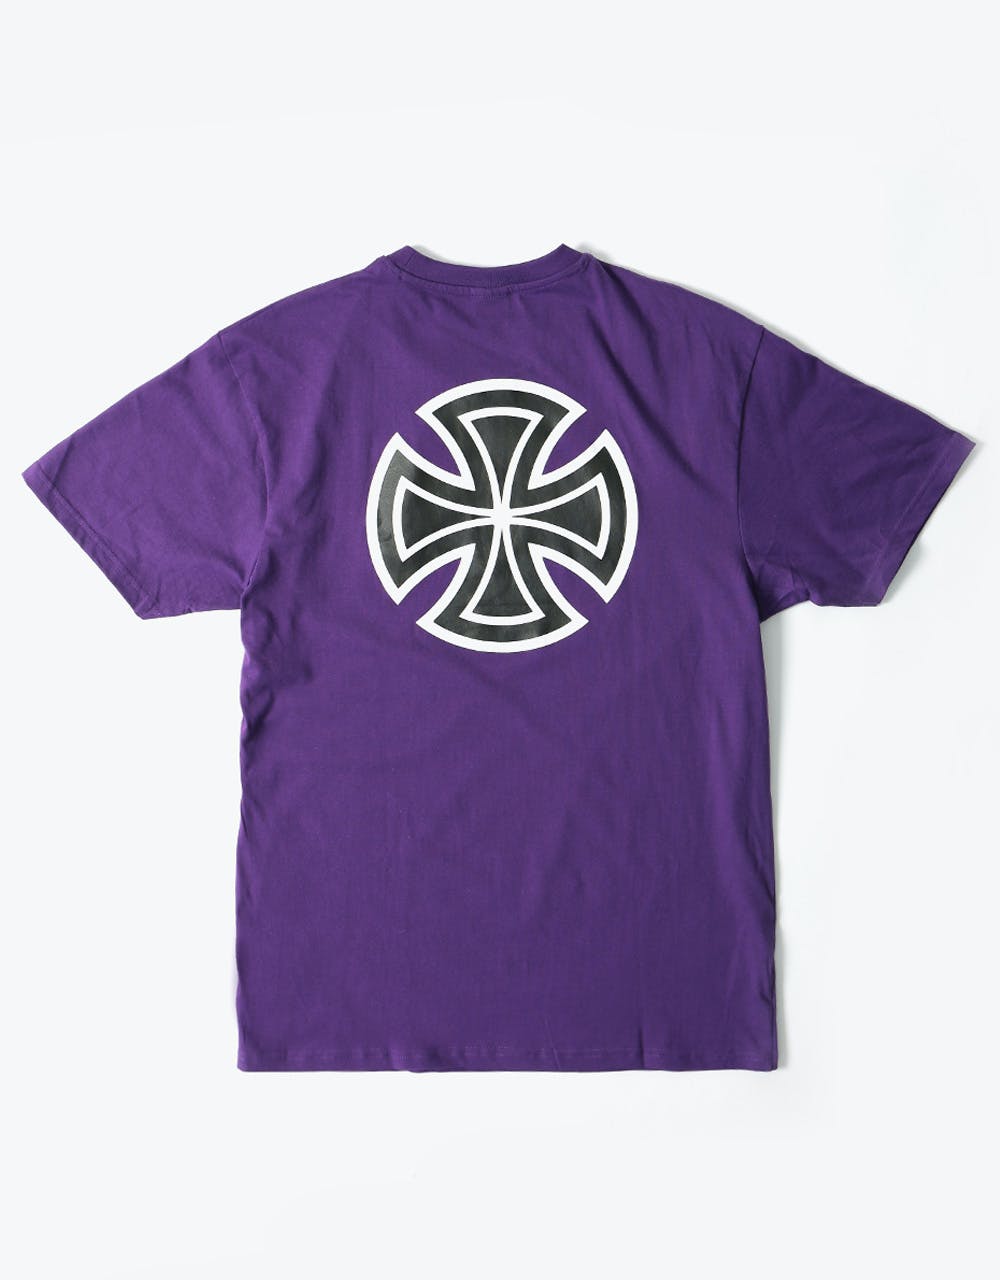 Independent Bar Cross T-Shirt - Deep Purple